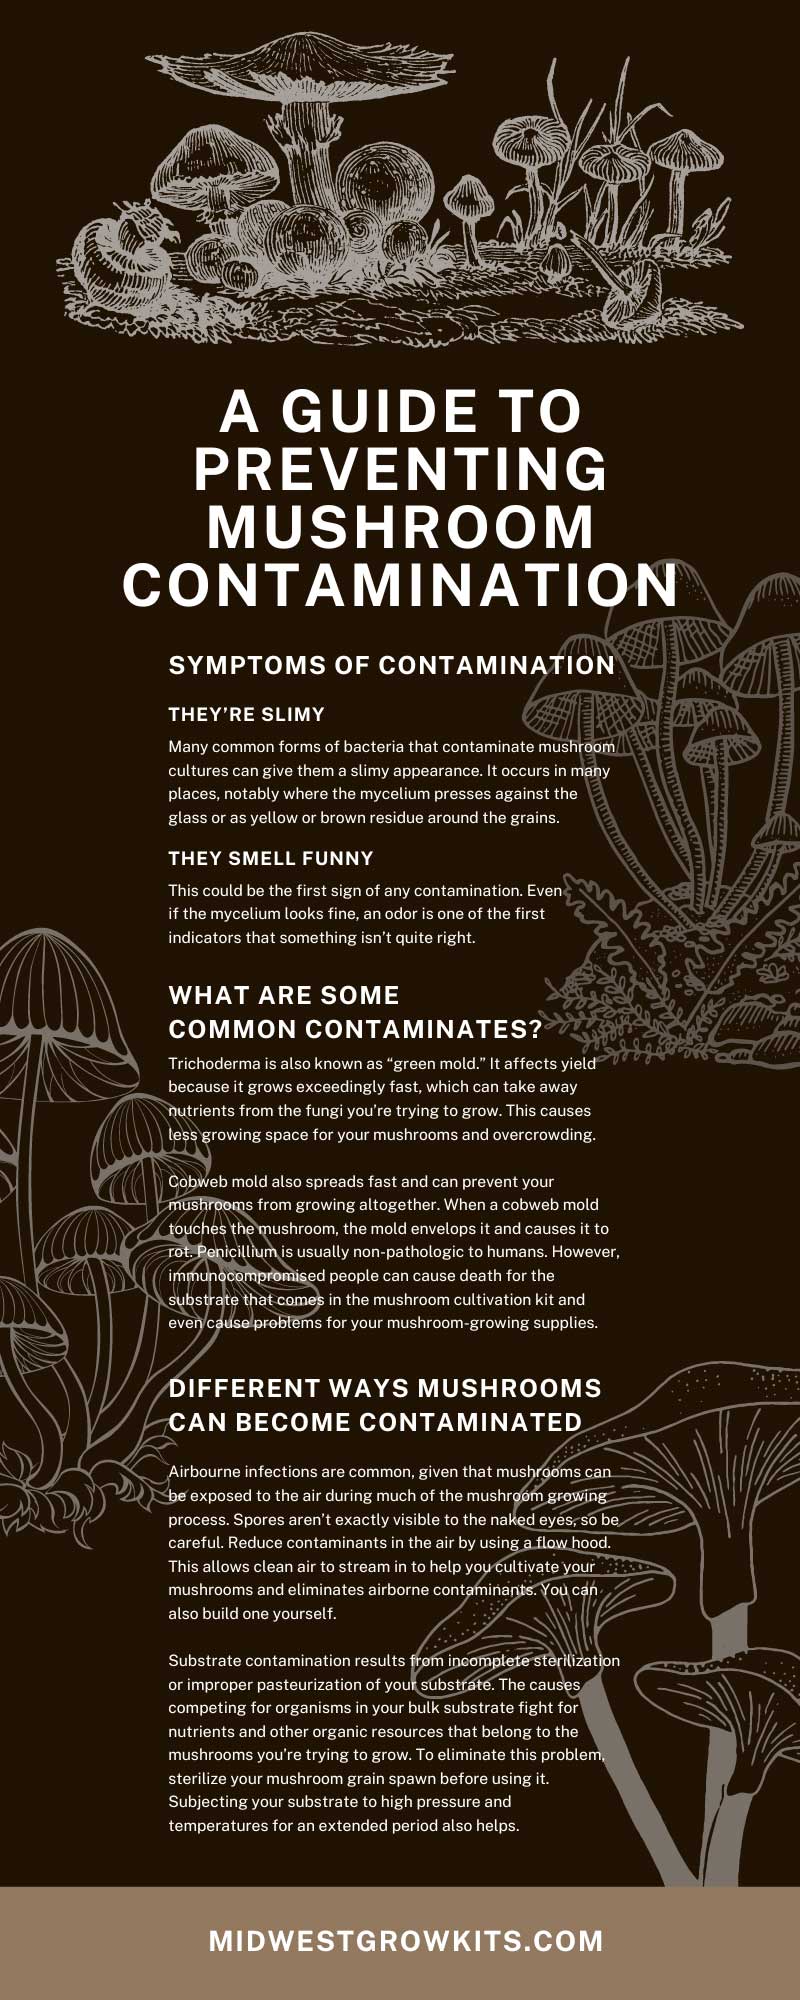 A Guide to Preventing Mushroom Contamination